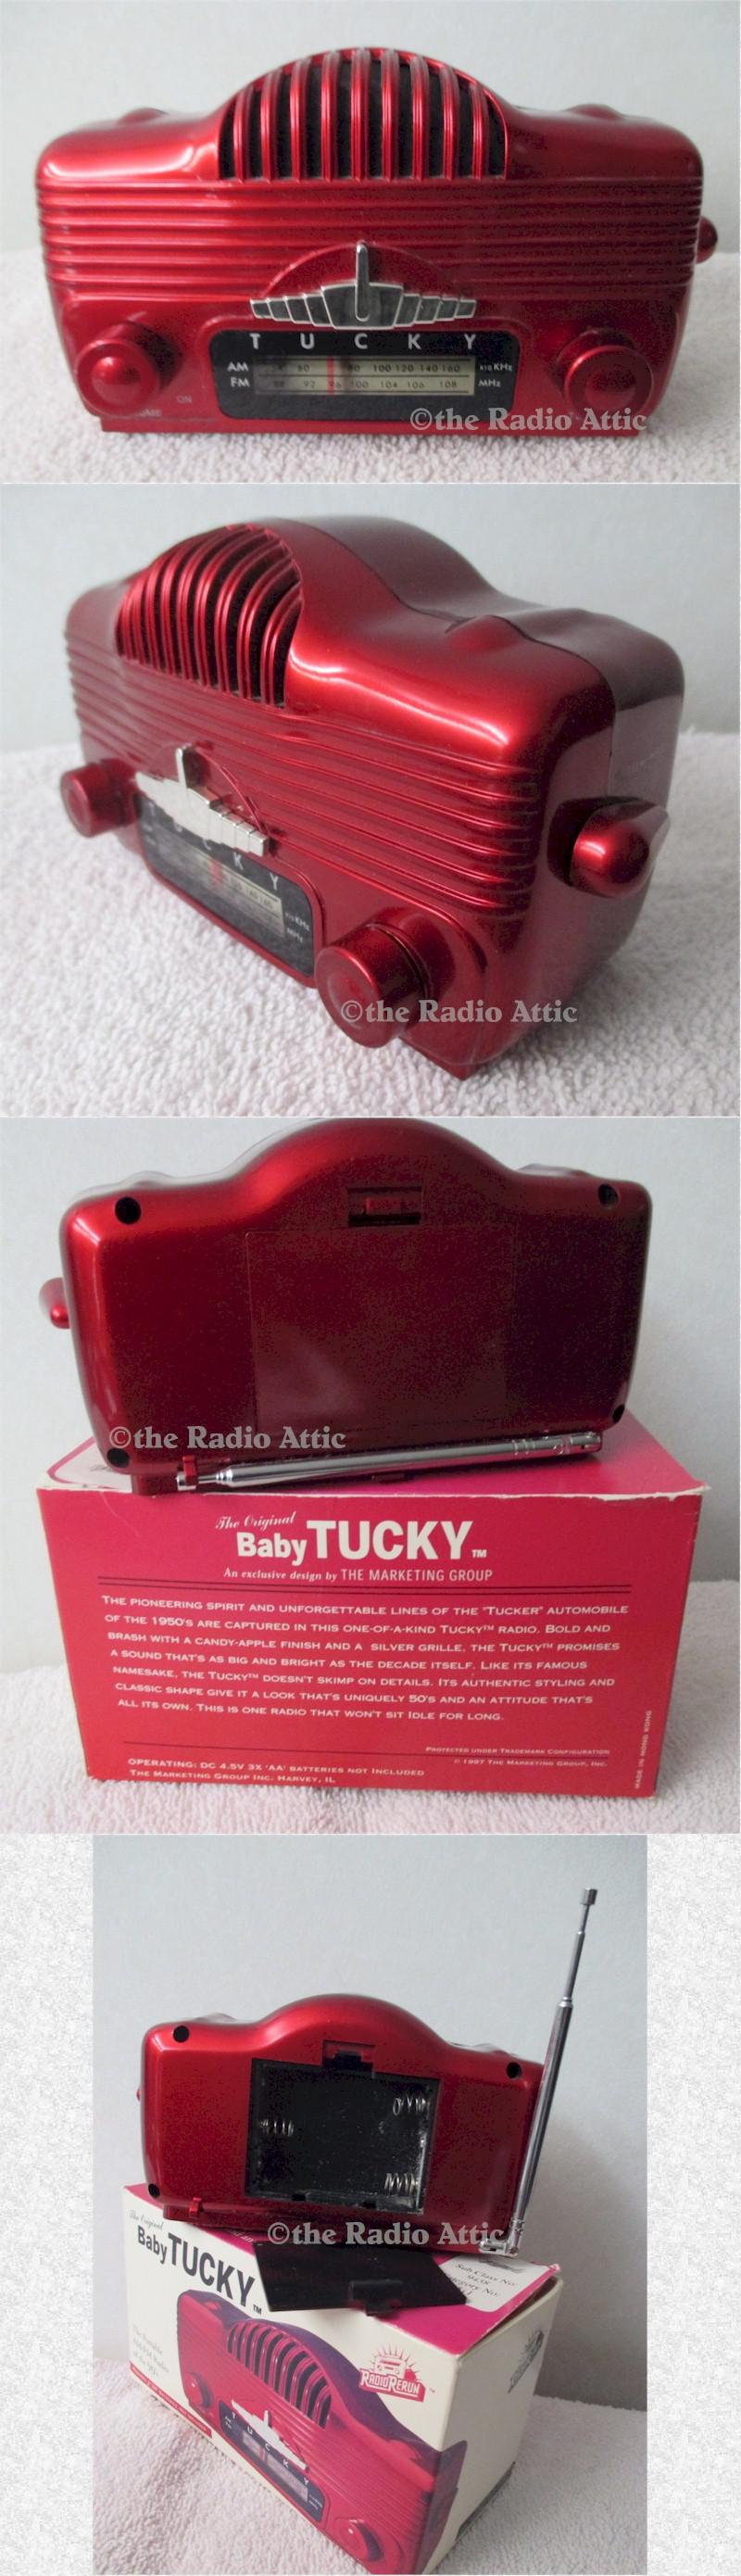 Baby Tucky Radio